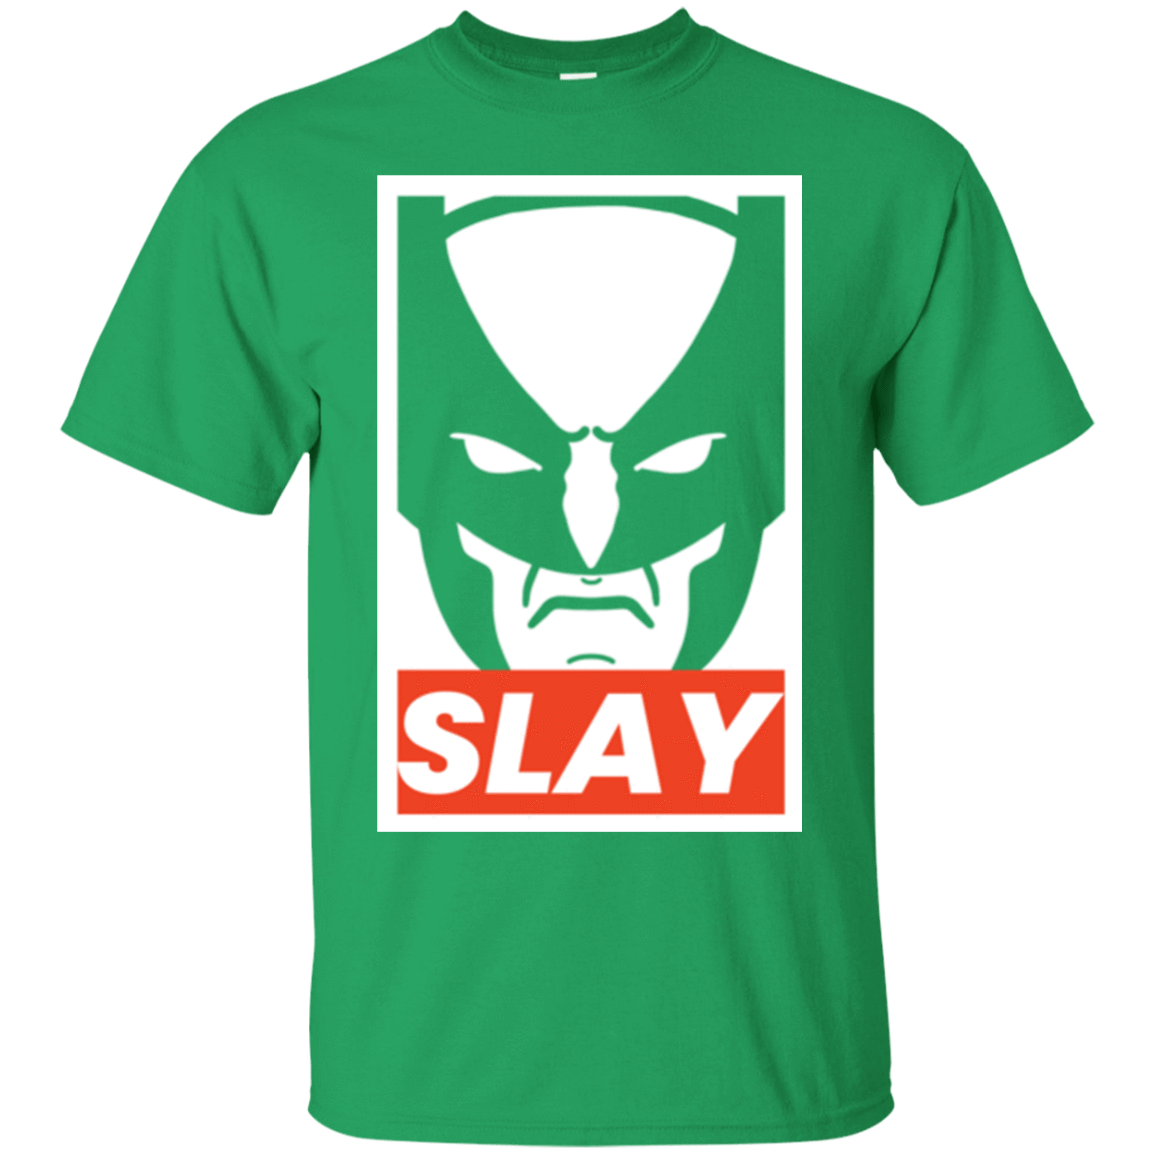 T-Shirts Irish Green / S SLAY T-Shirt